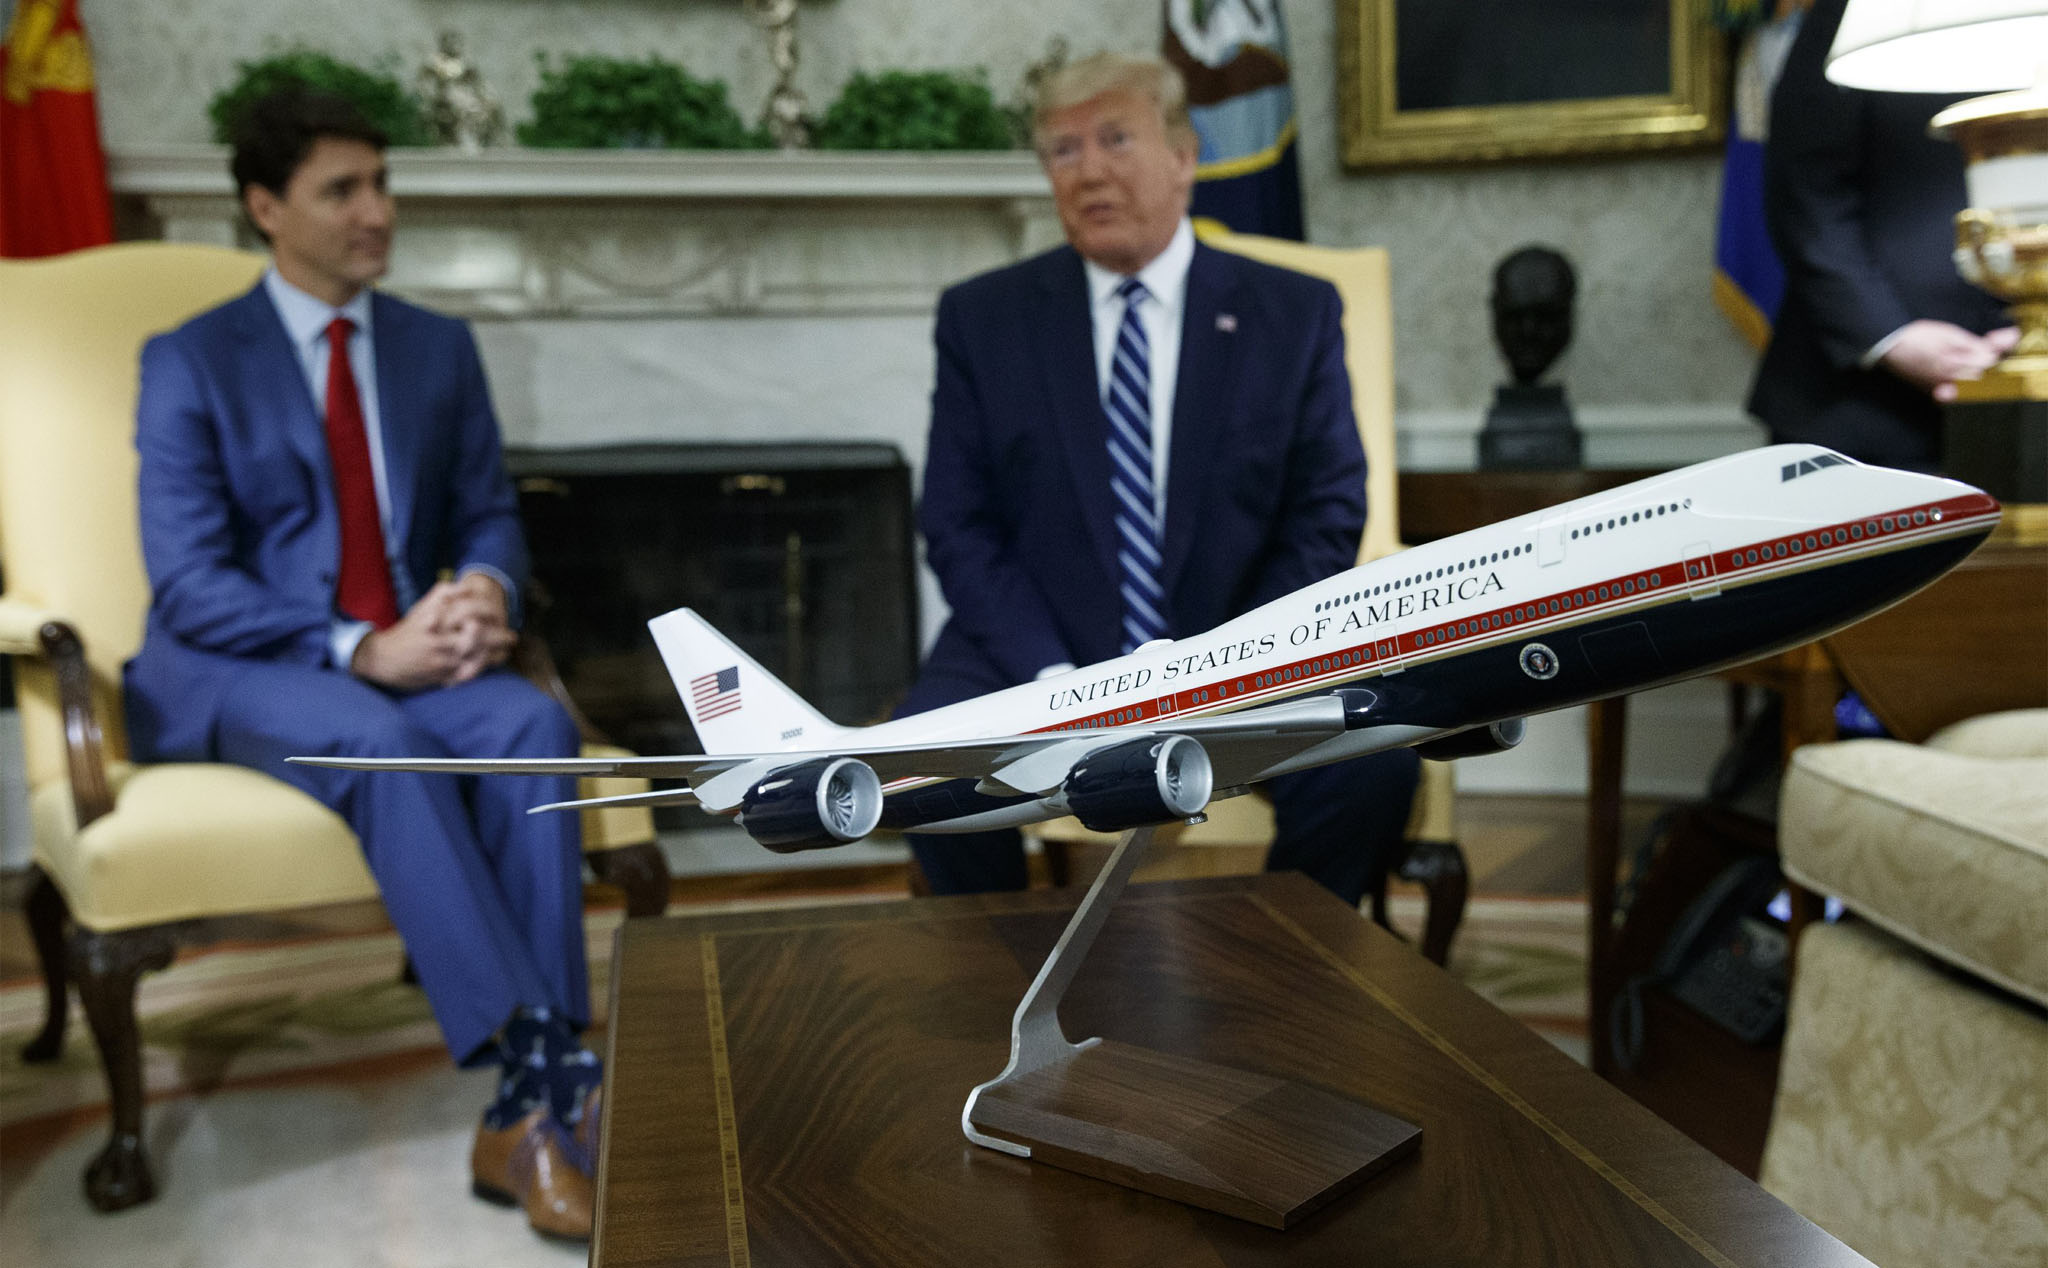 Air Force One của tổng thống Biden được nâng cấp lớn